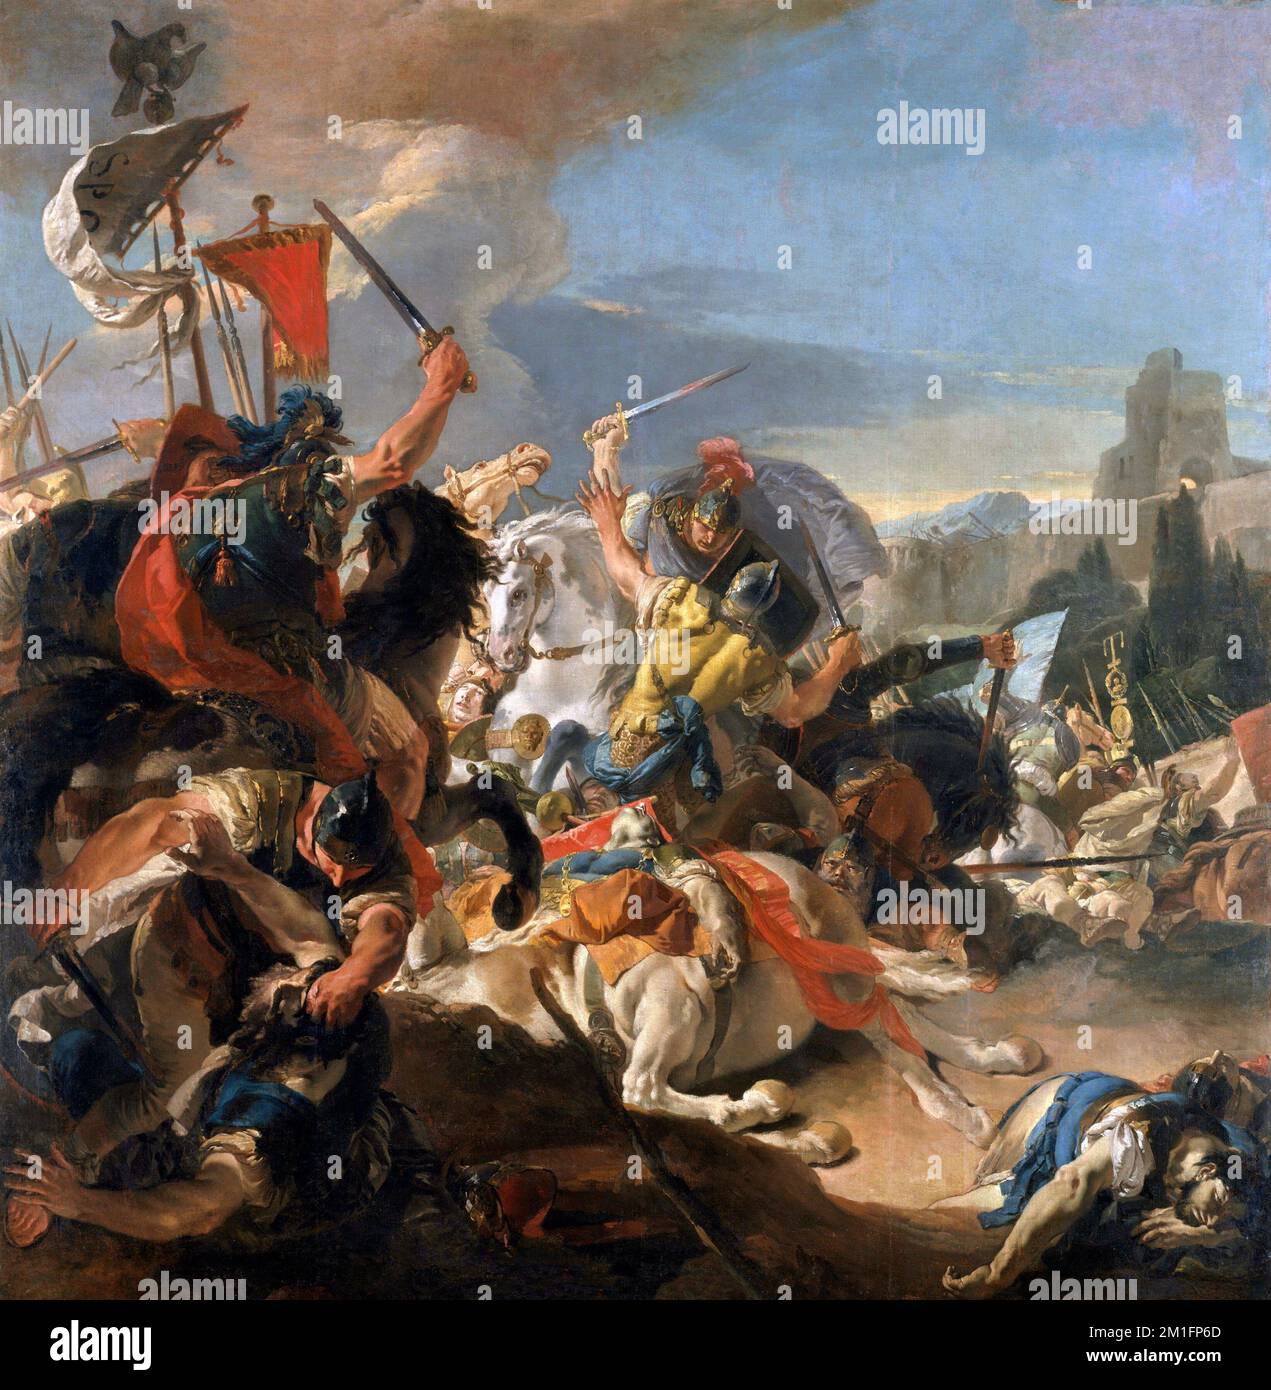 La bataille de Vercellae par Giovanni Battista Tiepolo (1696-1770), huile sur toile, 1725-29 Banque D'Images